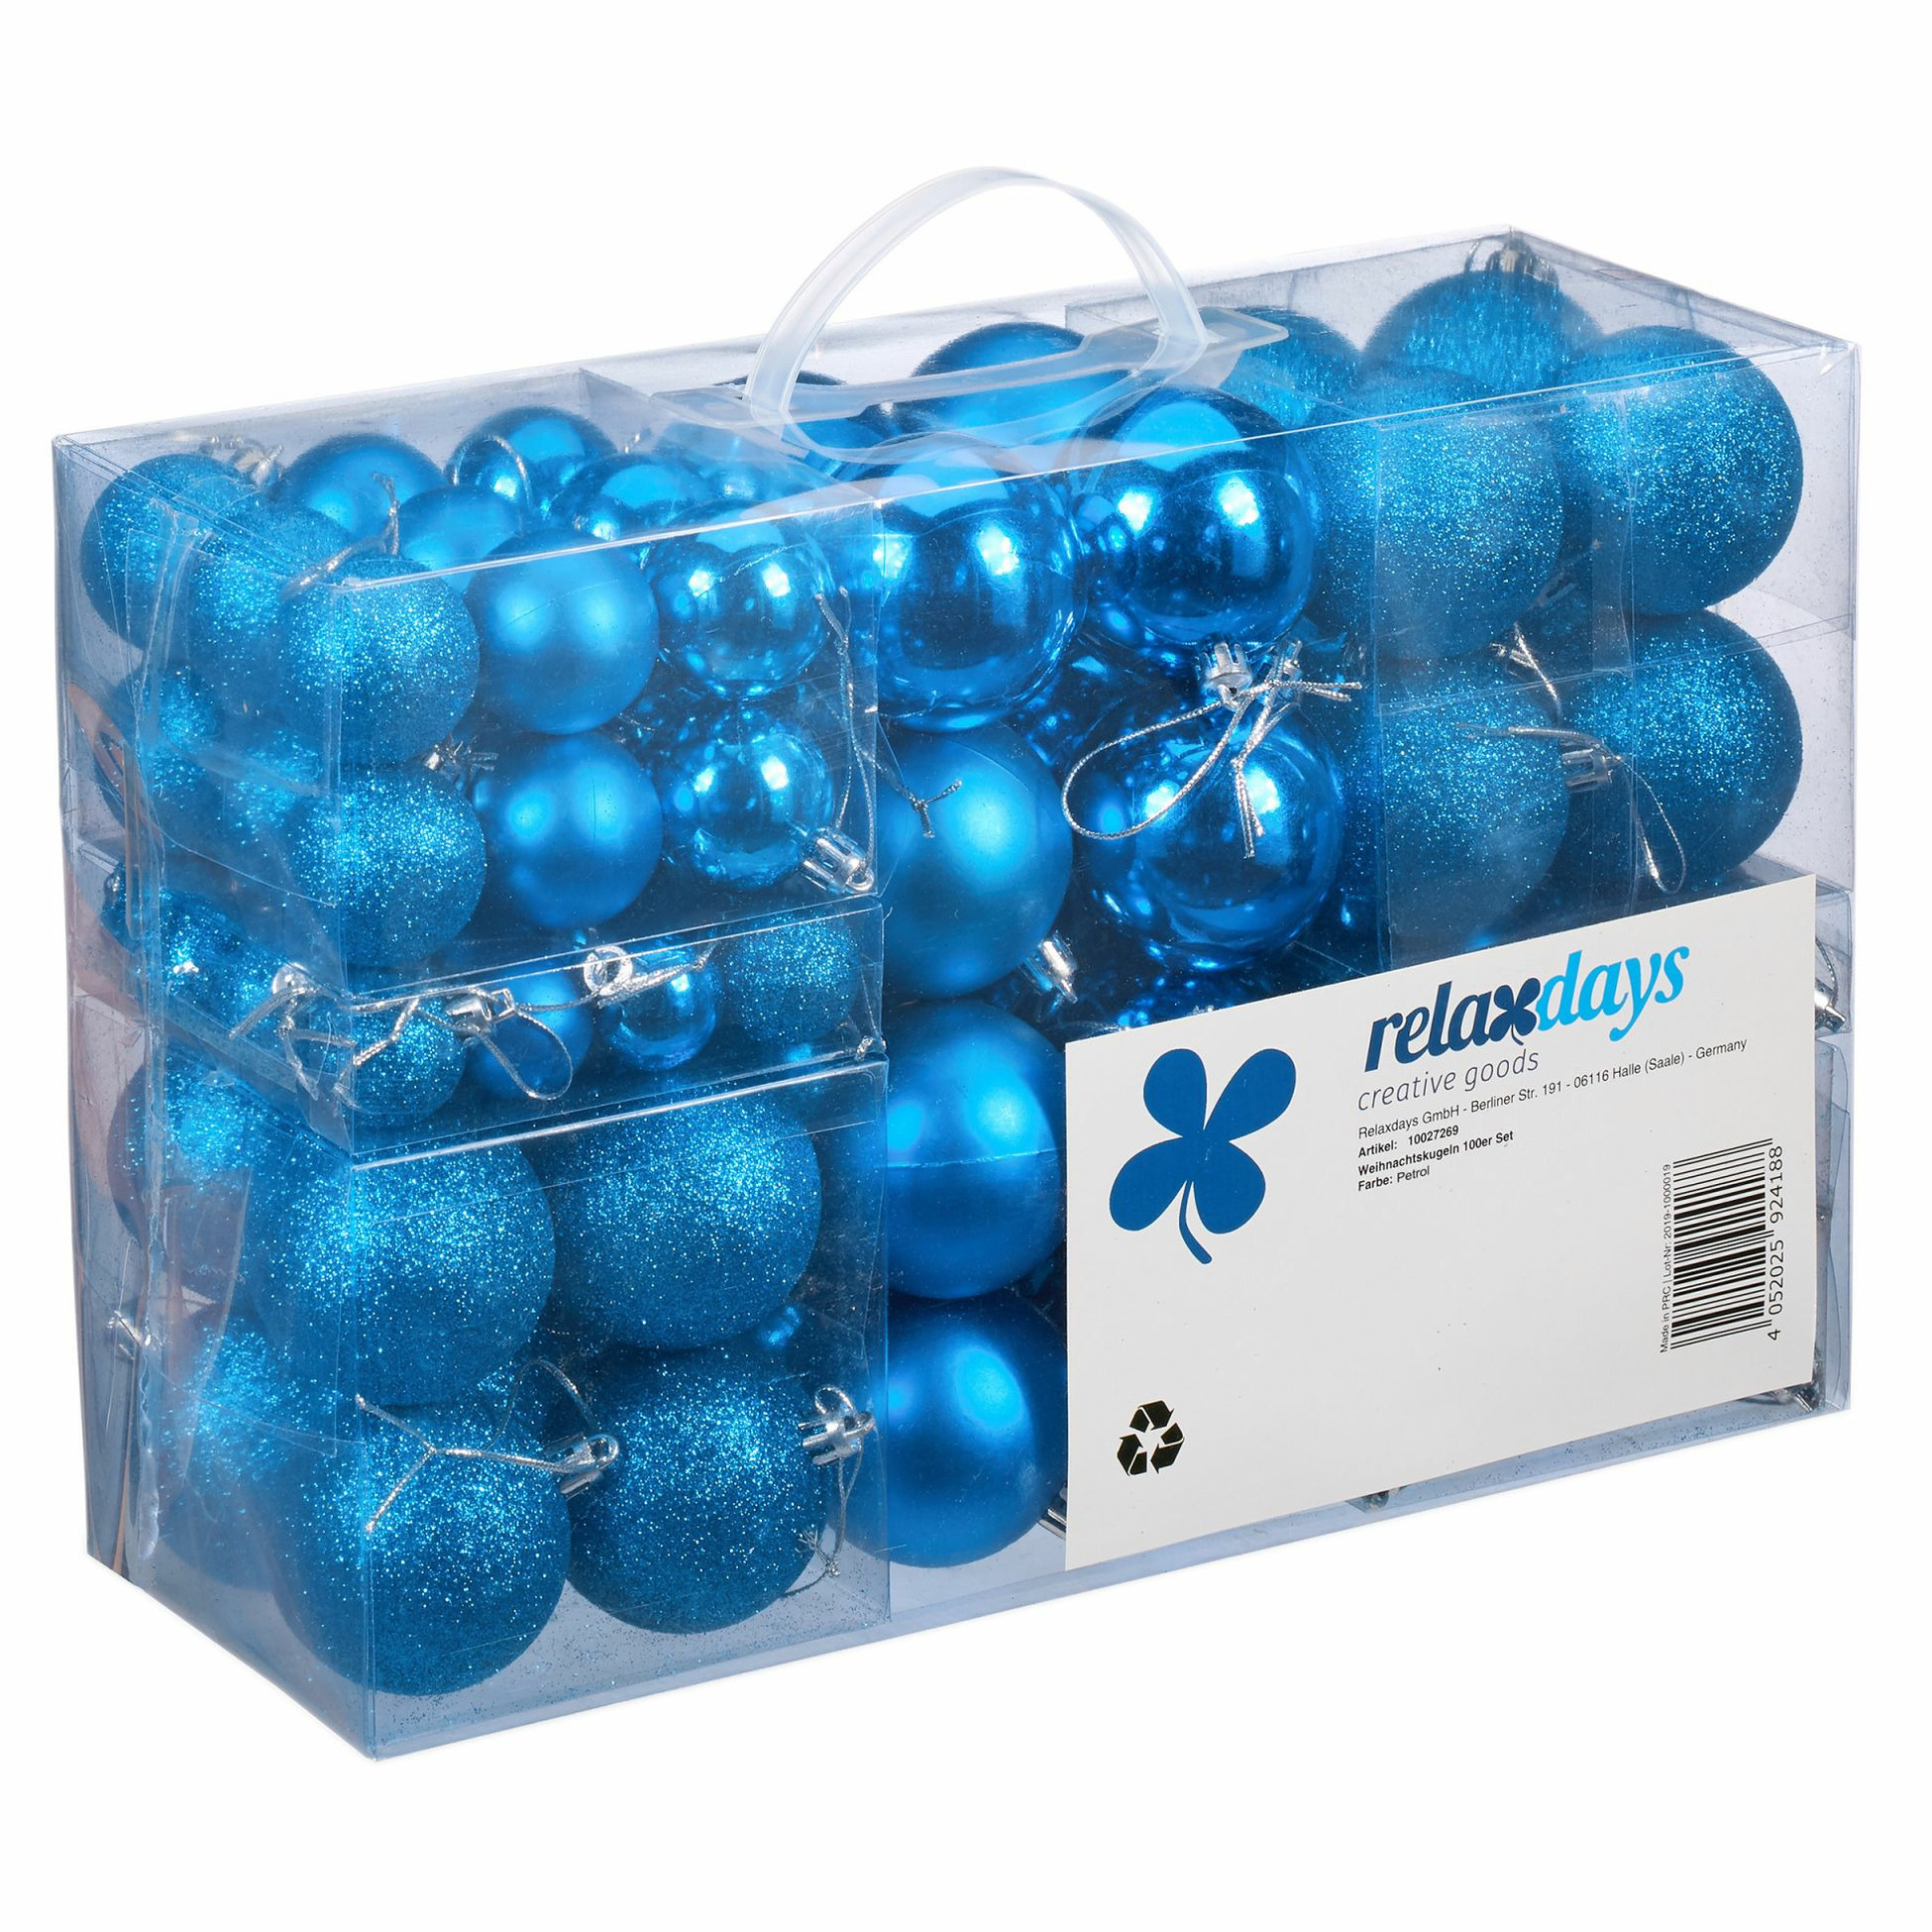 Relaxdays kerstballen 100x st intens blauw 3, 4 en 6 cm kunststof mat-glans-glitter